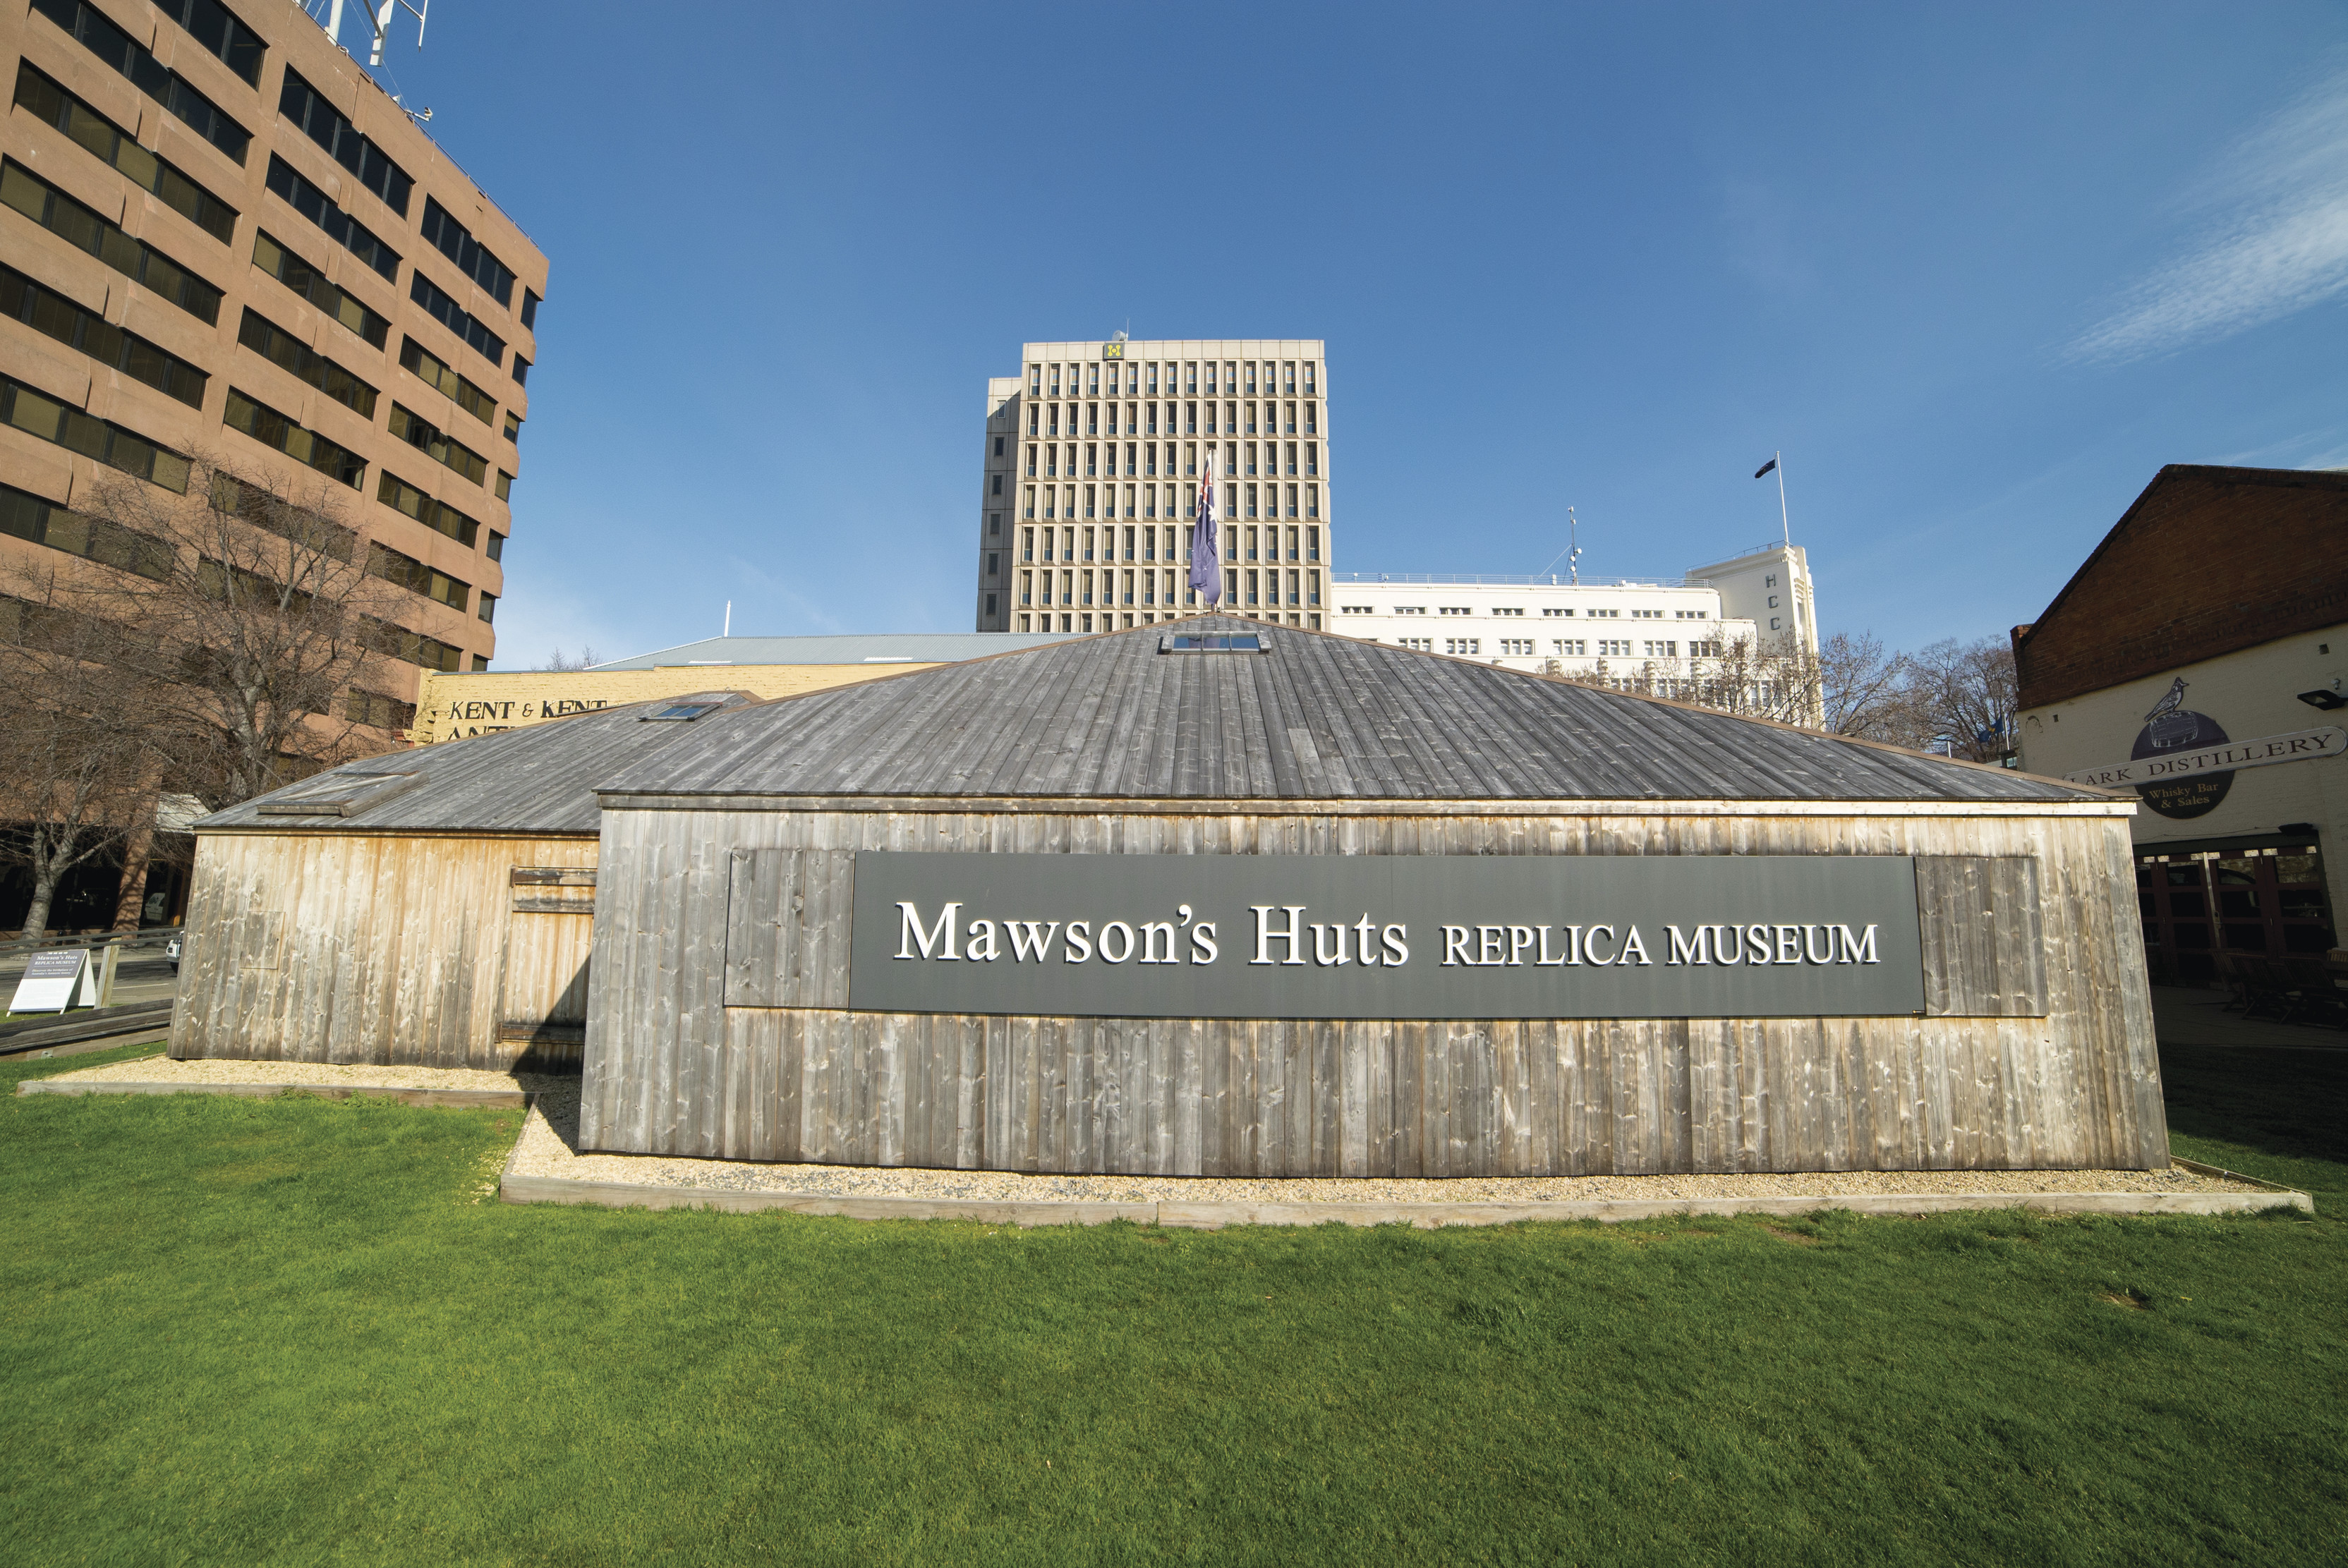 Mawson's Huts Replica Museum